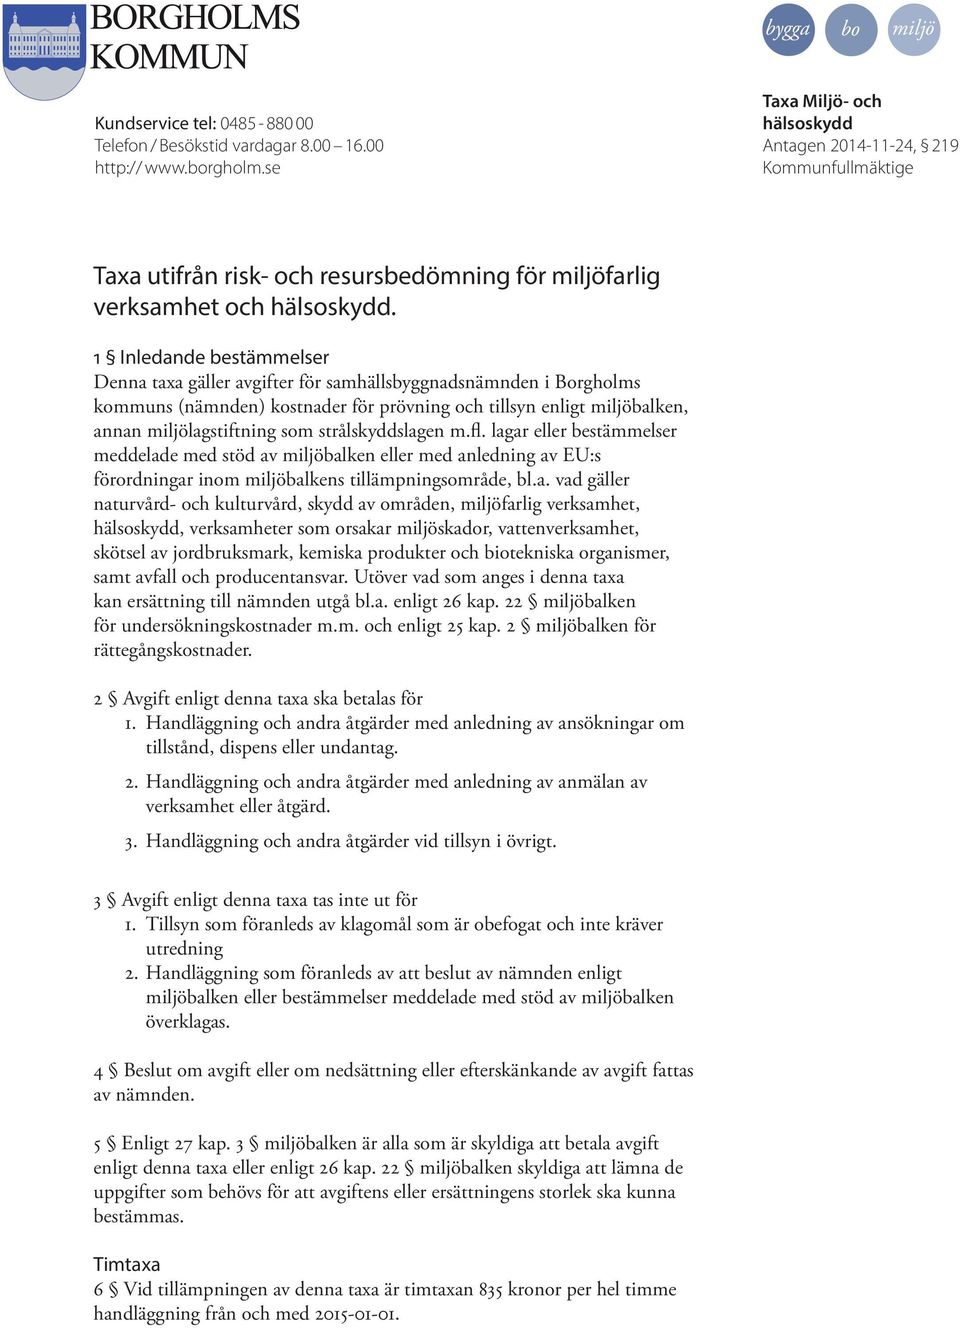 1 Inledande bestämmelser Denna taxa gäller avgifter för samhällsbyggnadsnämnden i Borgholms kommuns (nämnden) kostnader för prövning och tillsyn enligt miljöbalken, annan miljölagstiftning som